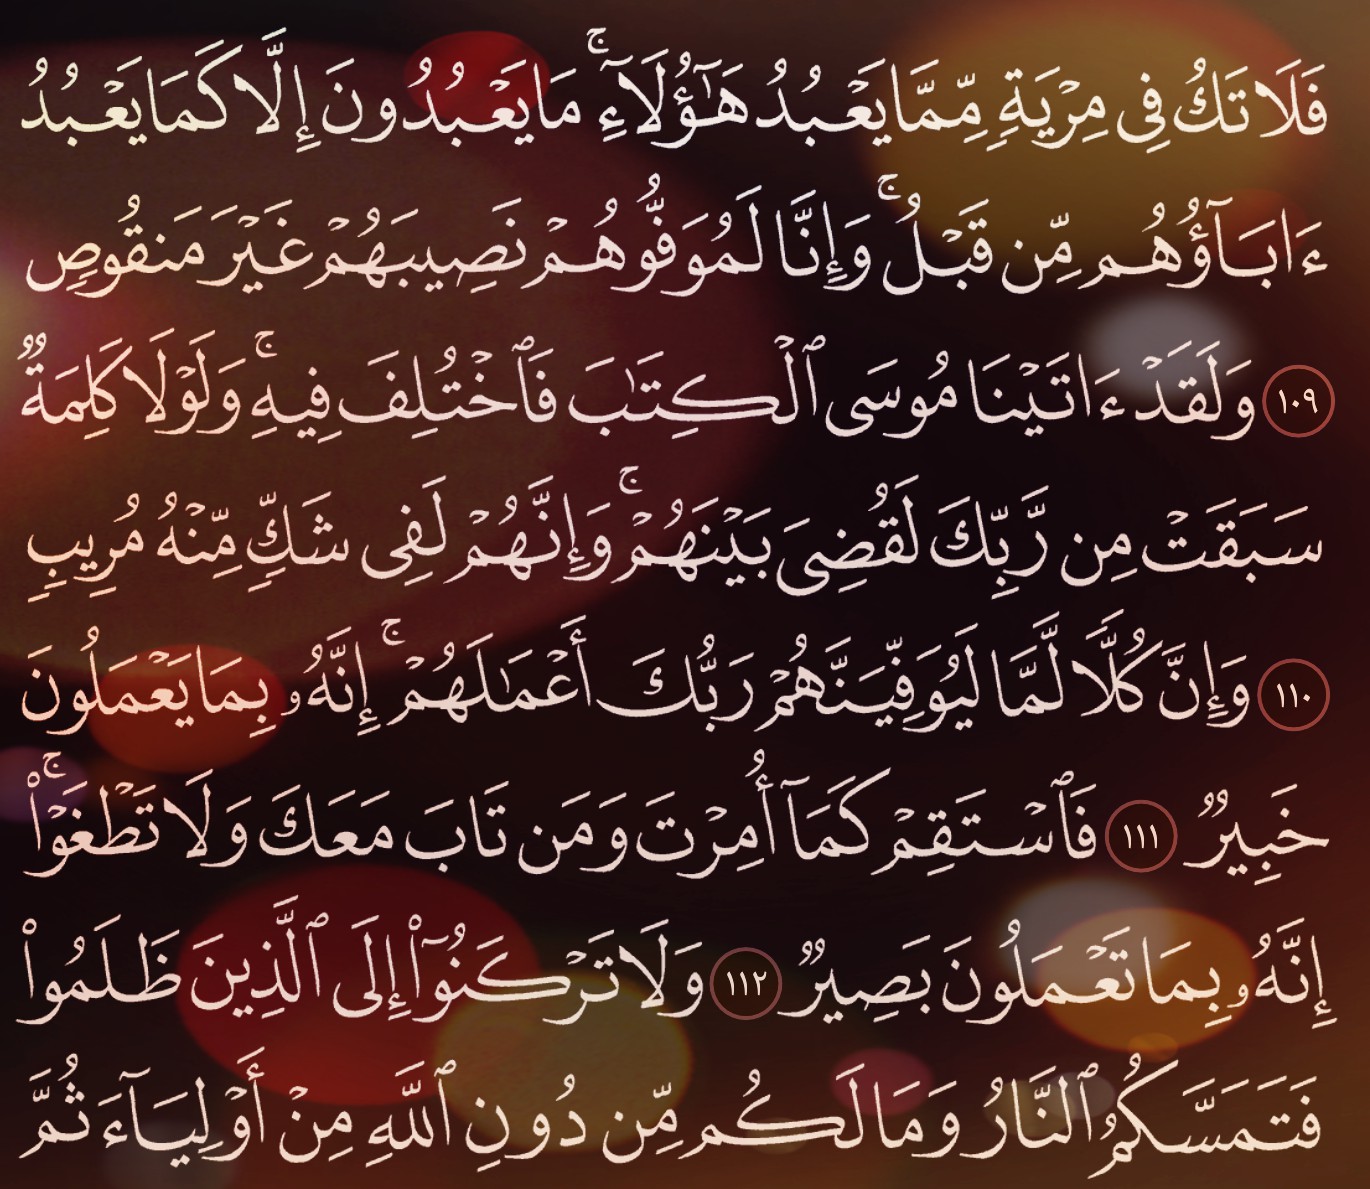 شرح وتفسير, سورة هود, Surah Hud, من الآية 103, إلى الاية 123,